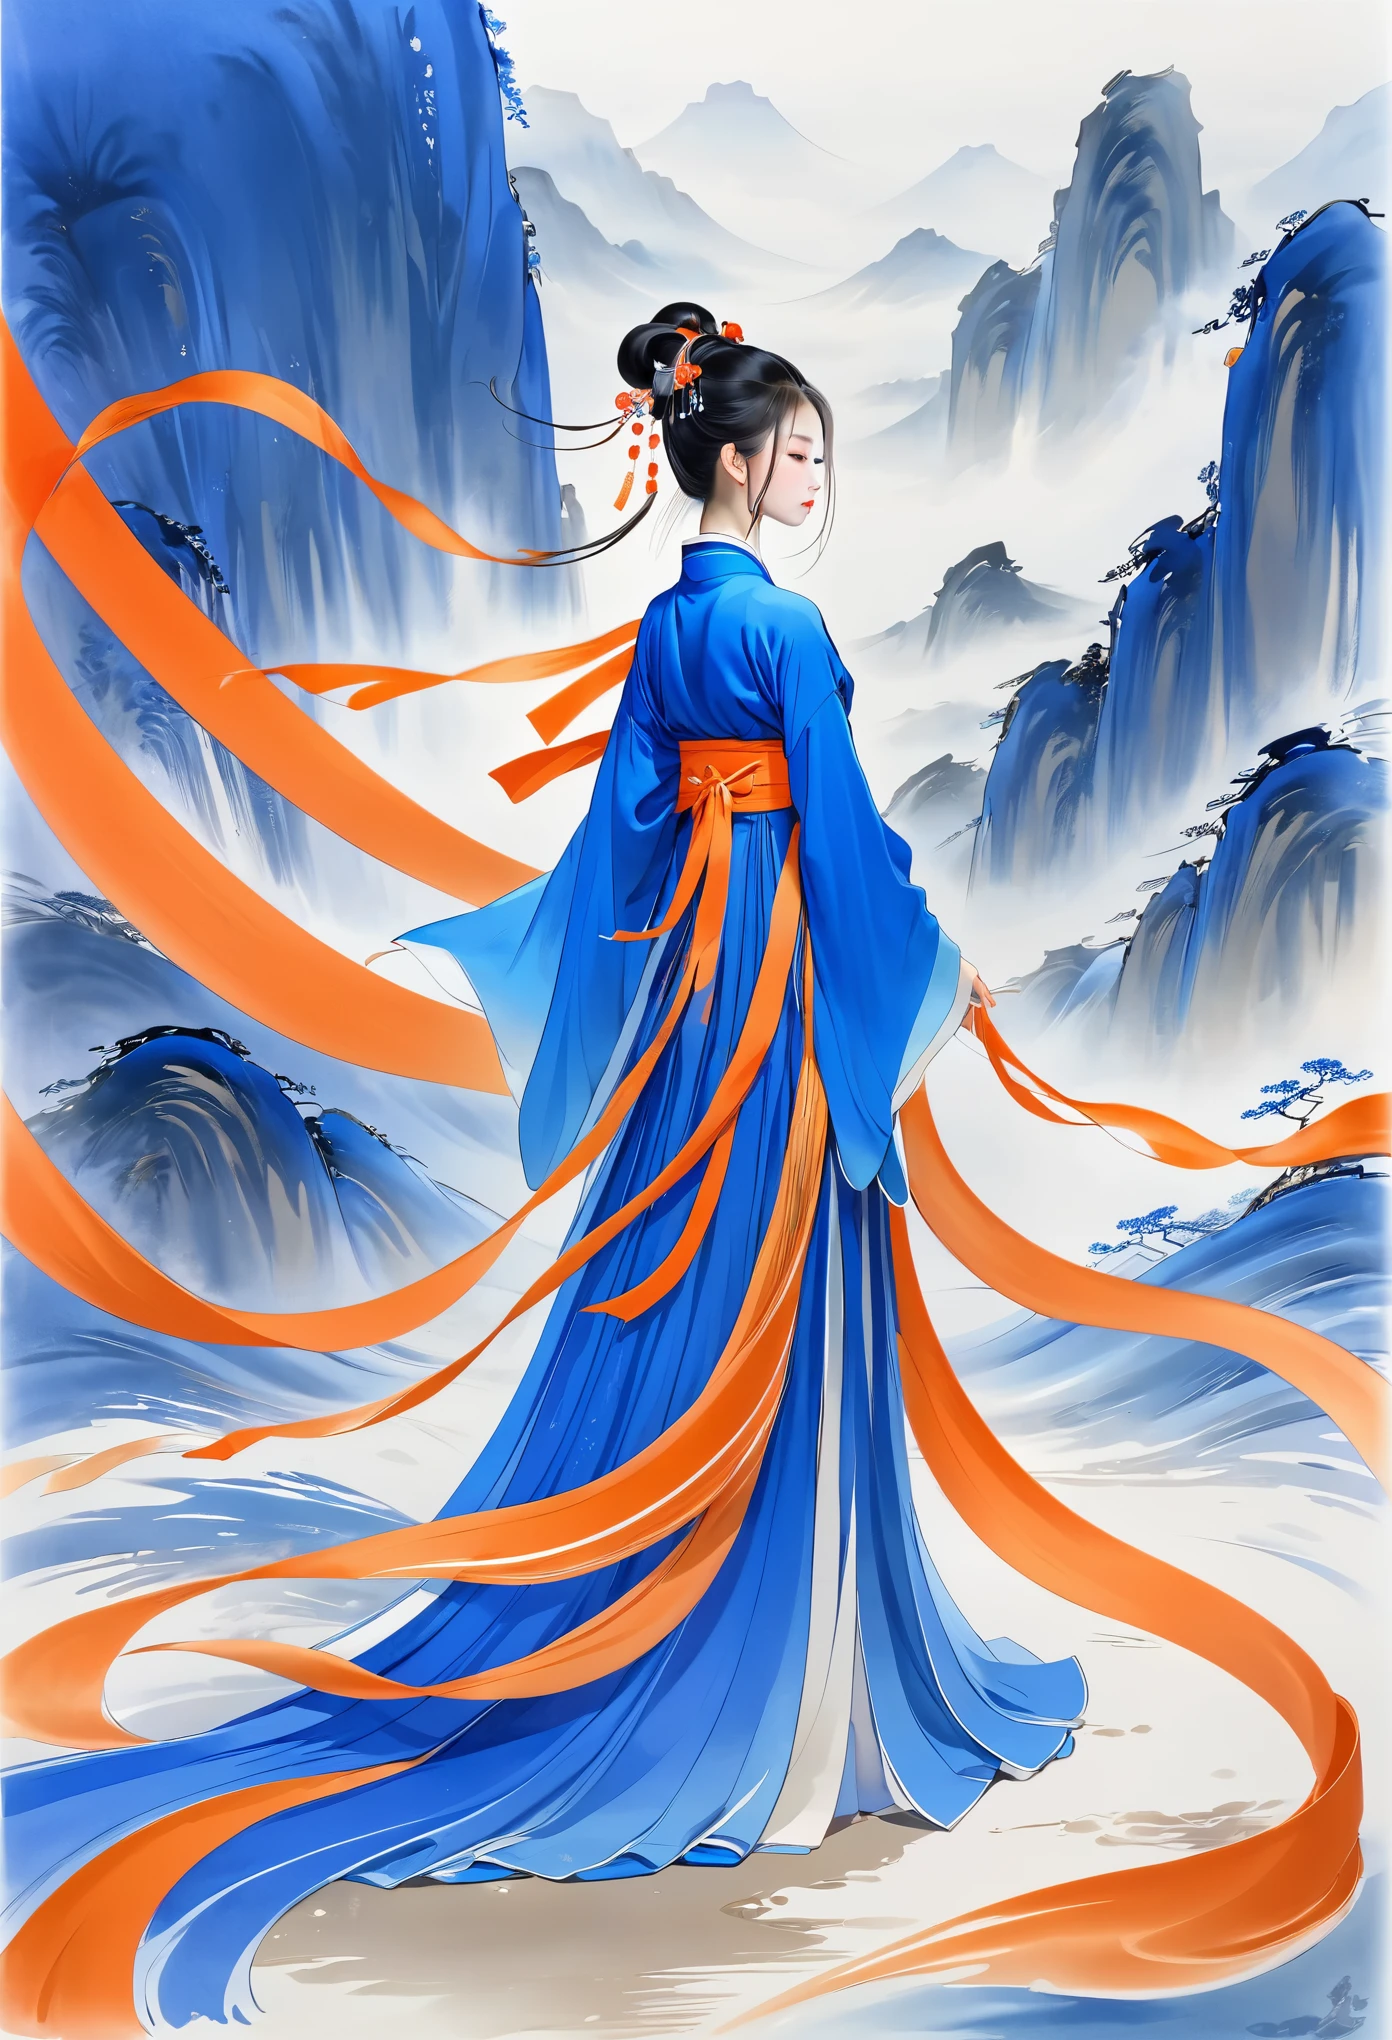 1 名女孩，Hanfu，飄逸的絲帶，藍色和橙色，極簡主義，徒手，漫長的路，流暢的線條